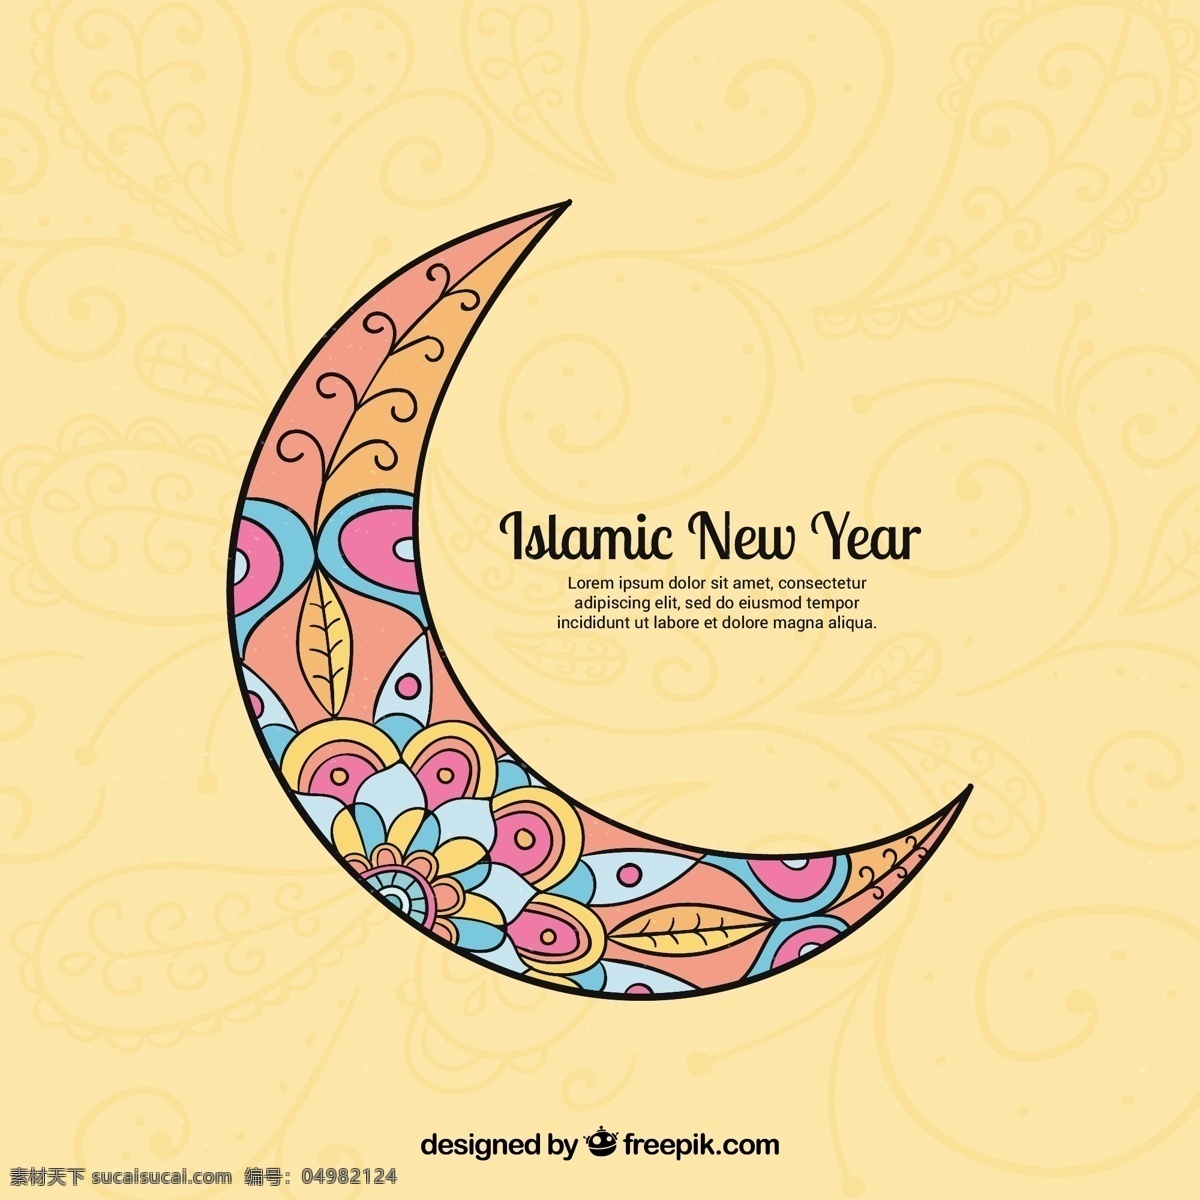 伊斯兰 新年 背景 月亮 墙纸 庆典 阿拉伯语 开斋节 新宗教 伊斯兰教 穆巴拉克 穆斯林 庆祝 文化 年 问候 精神